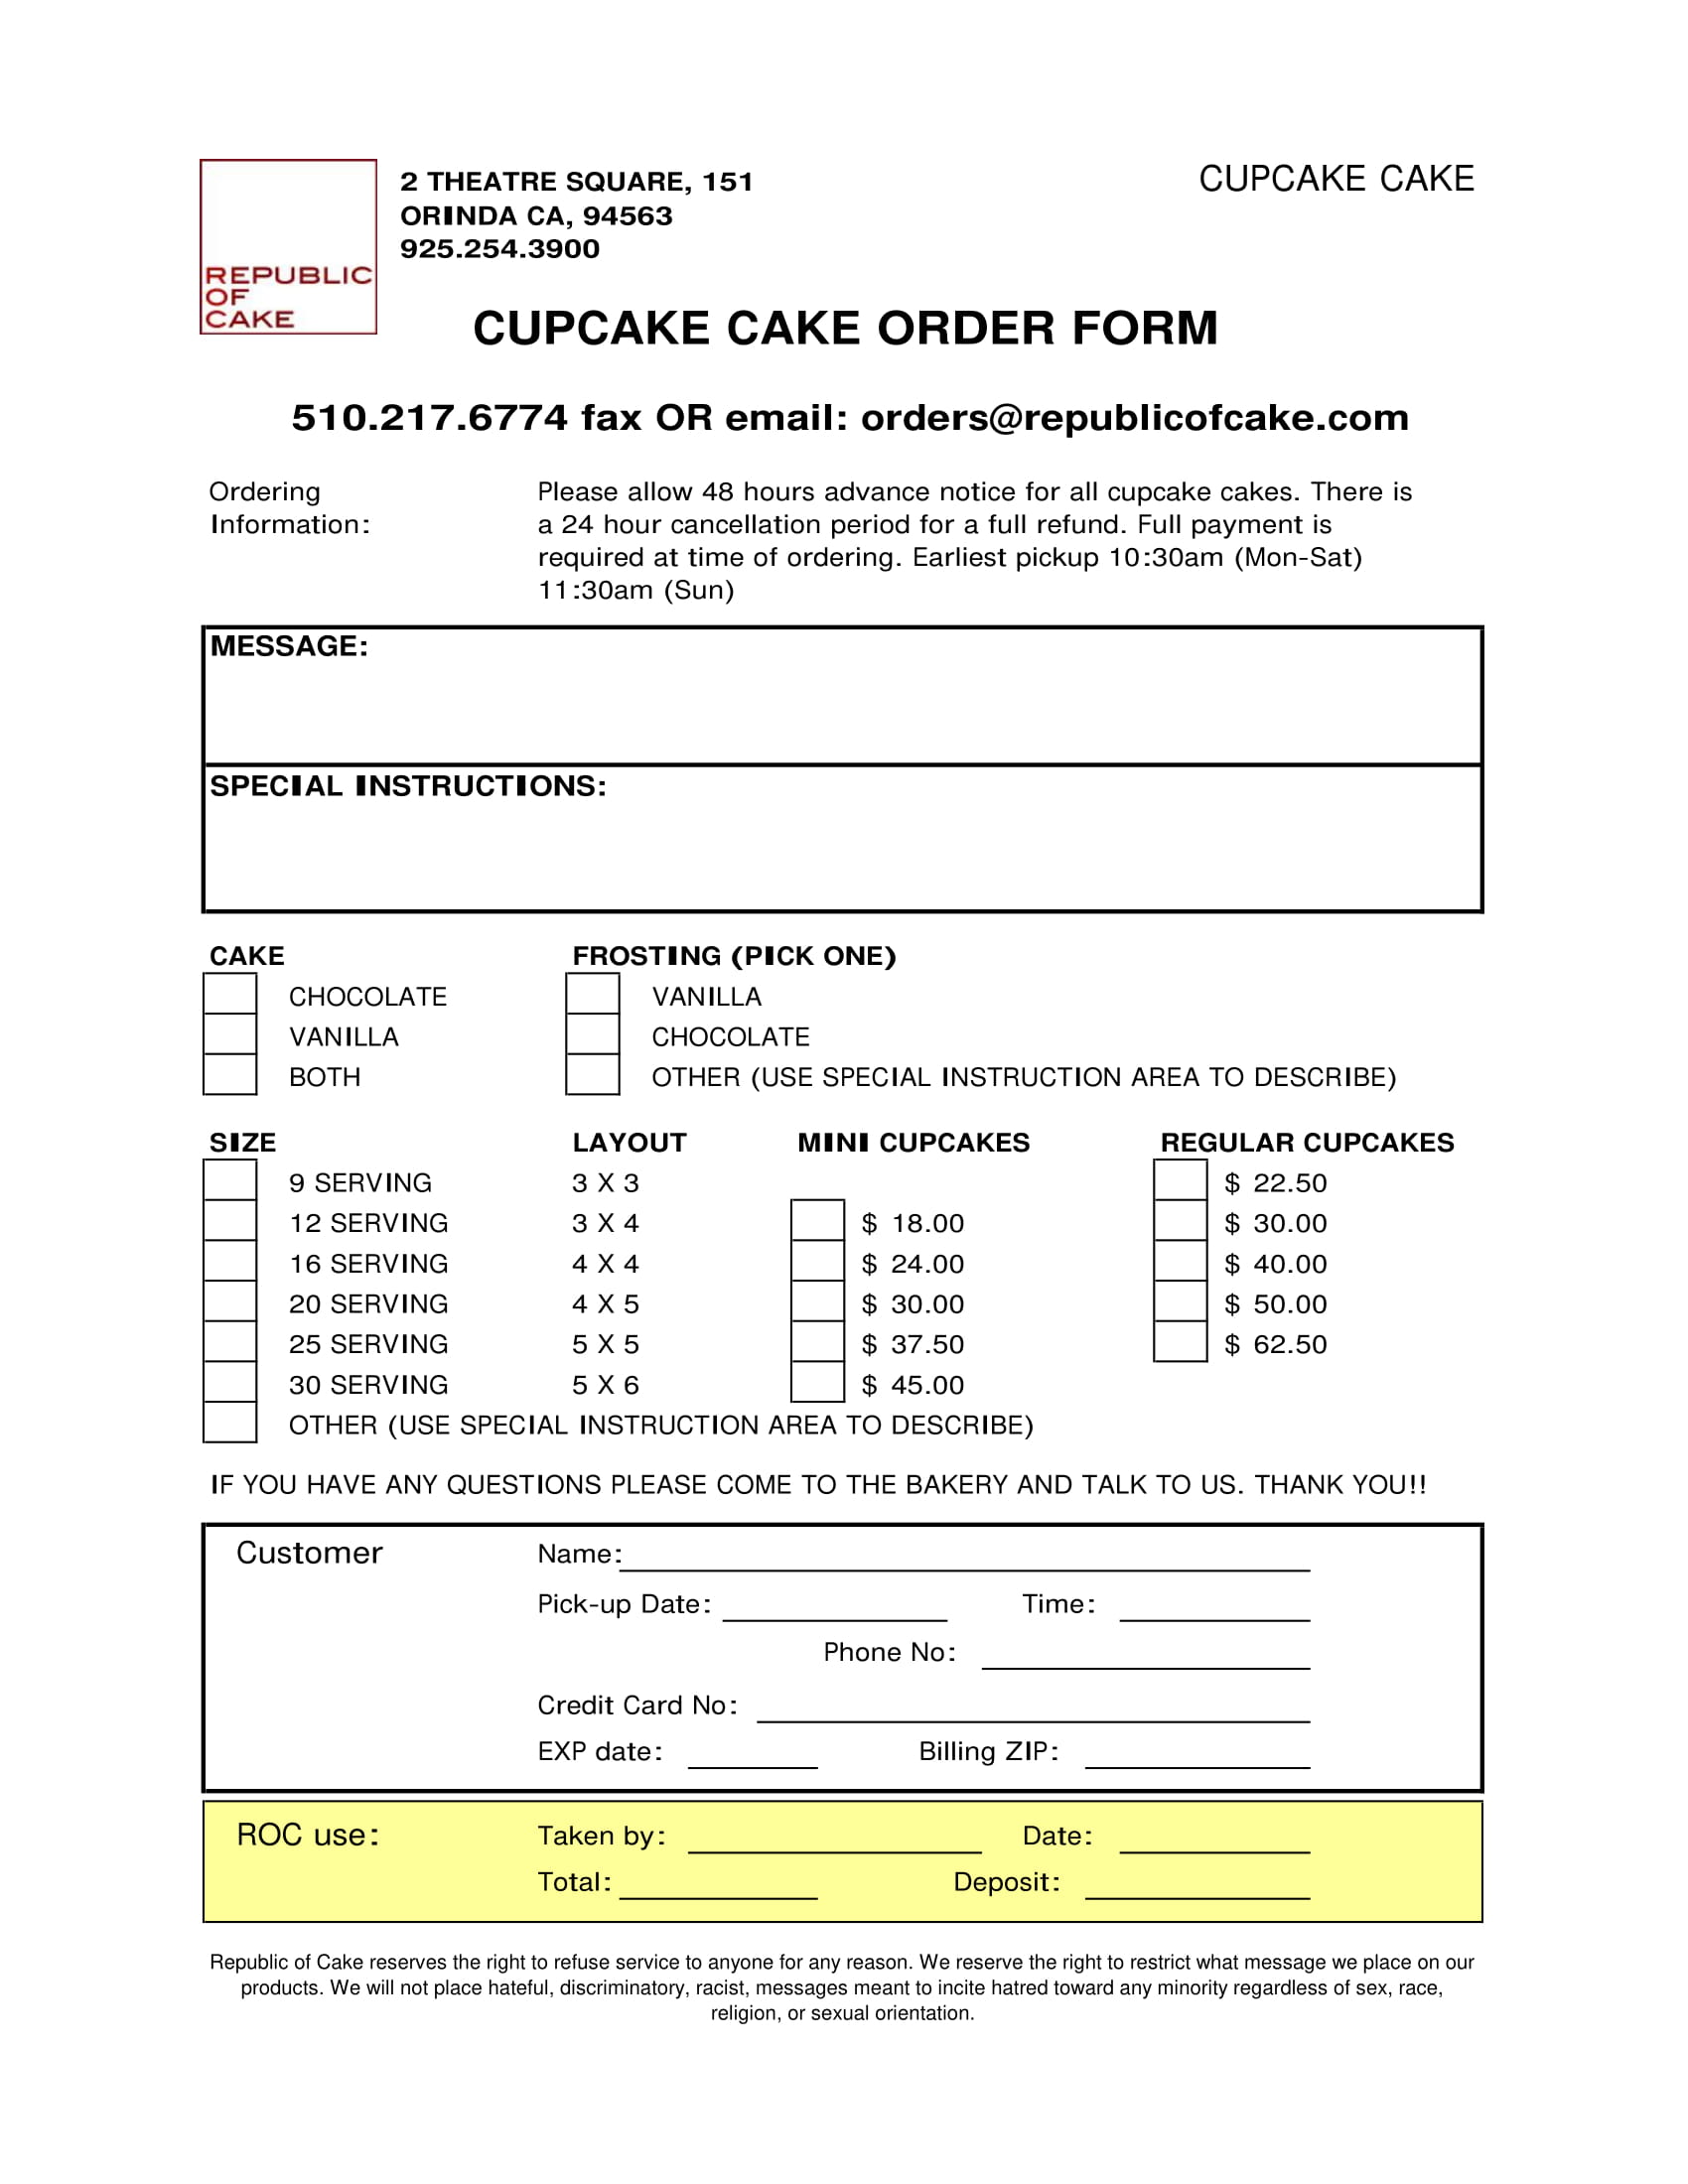 cupcake cake order form 1